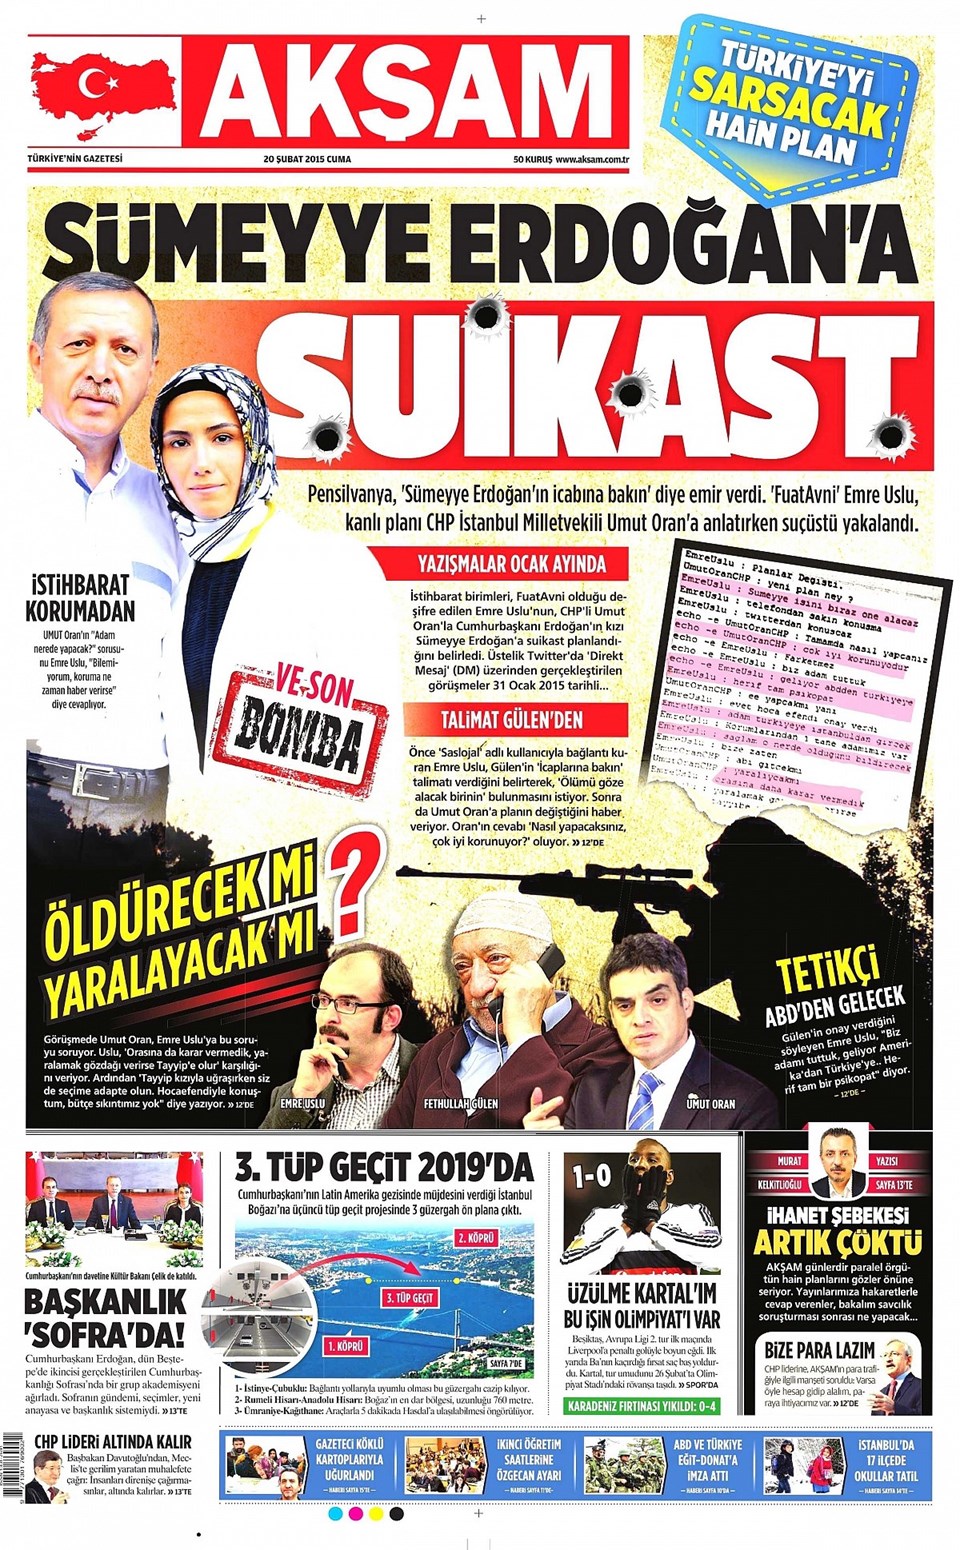 Sümeyye Erdoğan'a suikast iddiasına soruşturma - 1